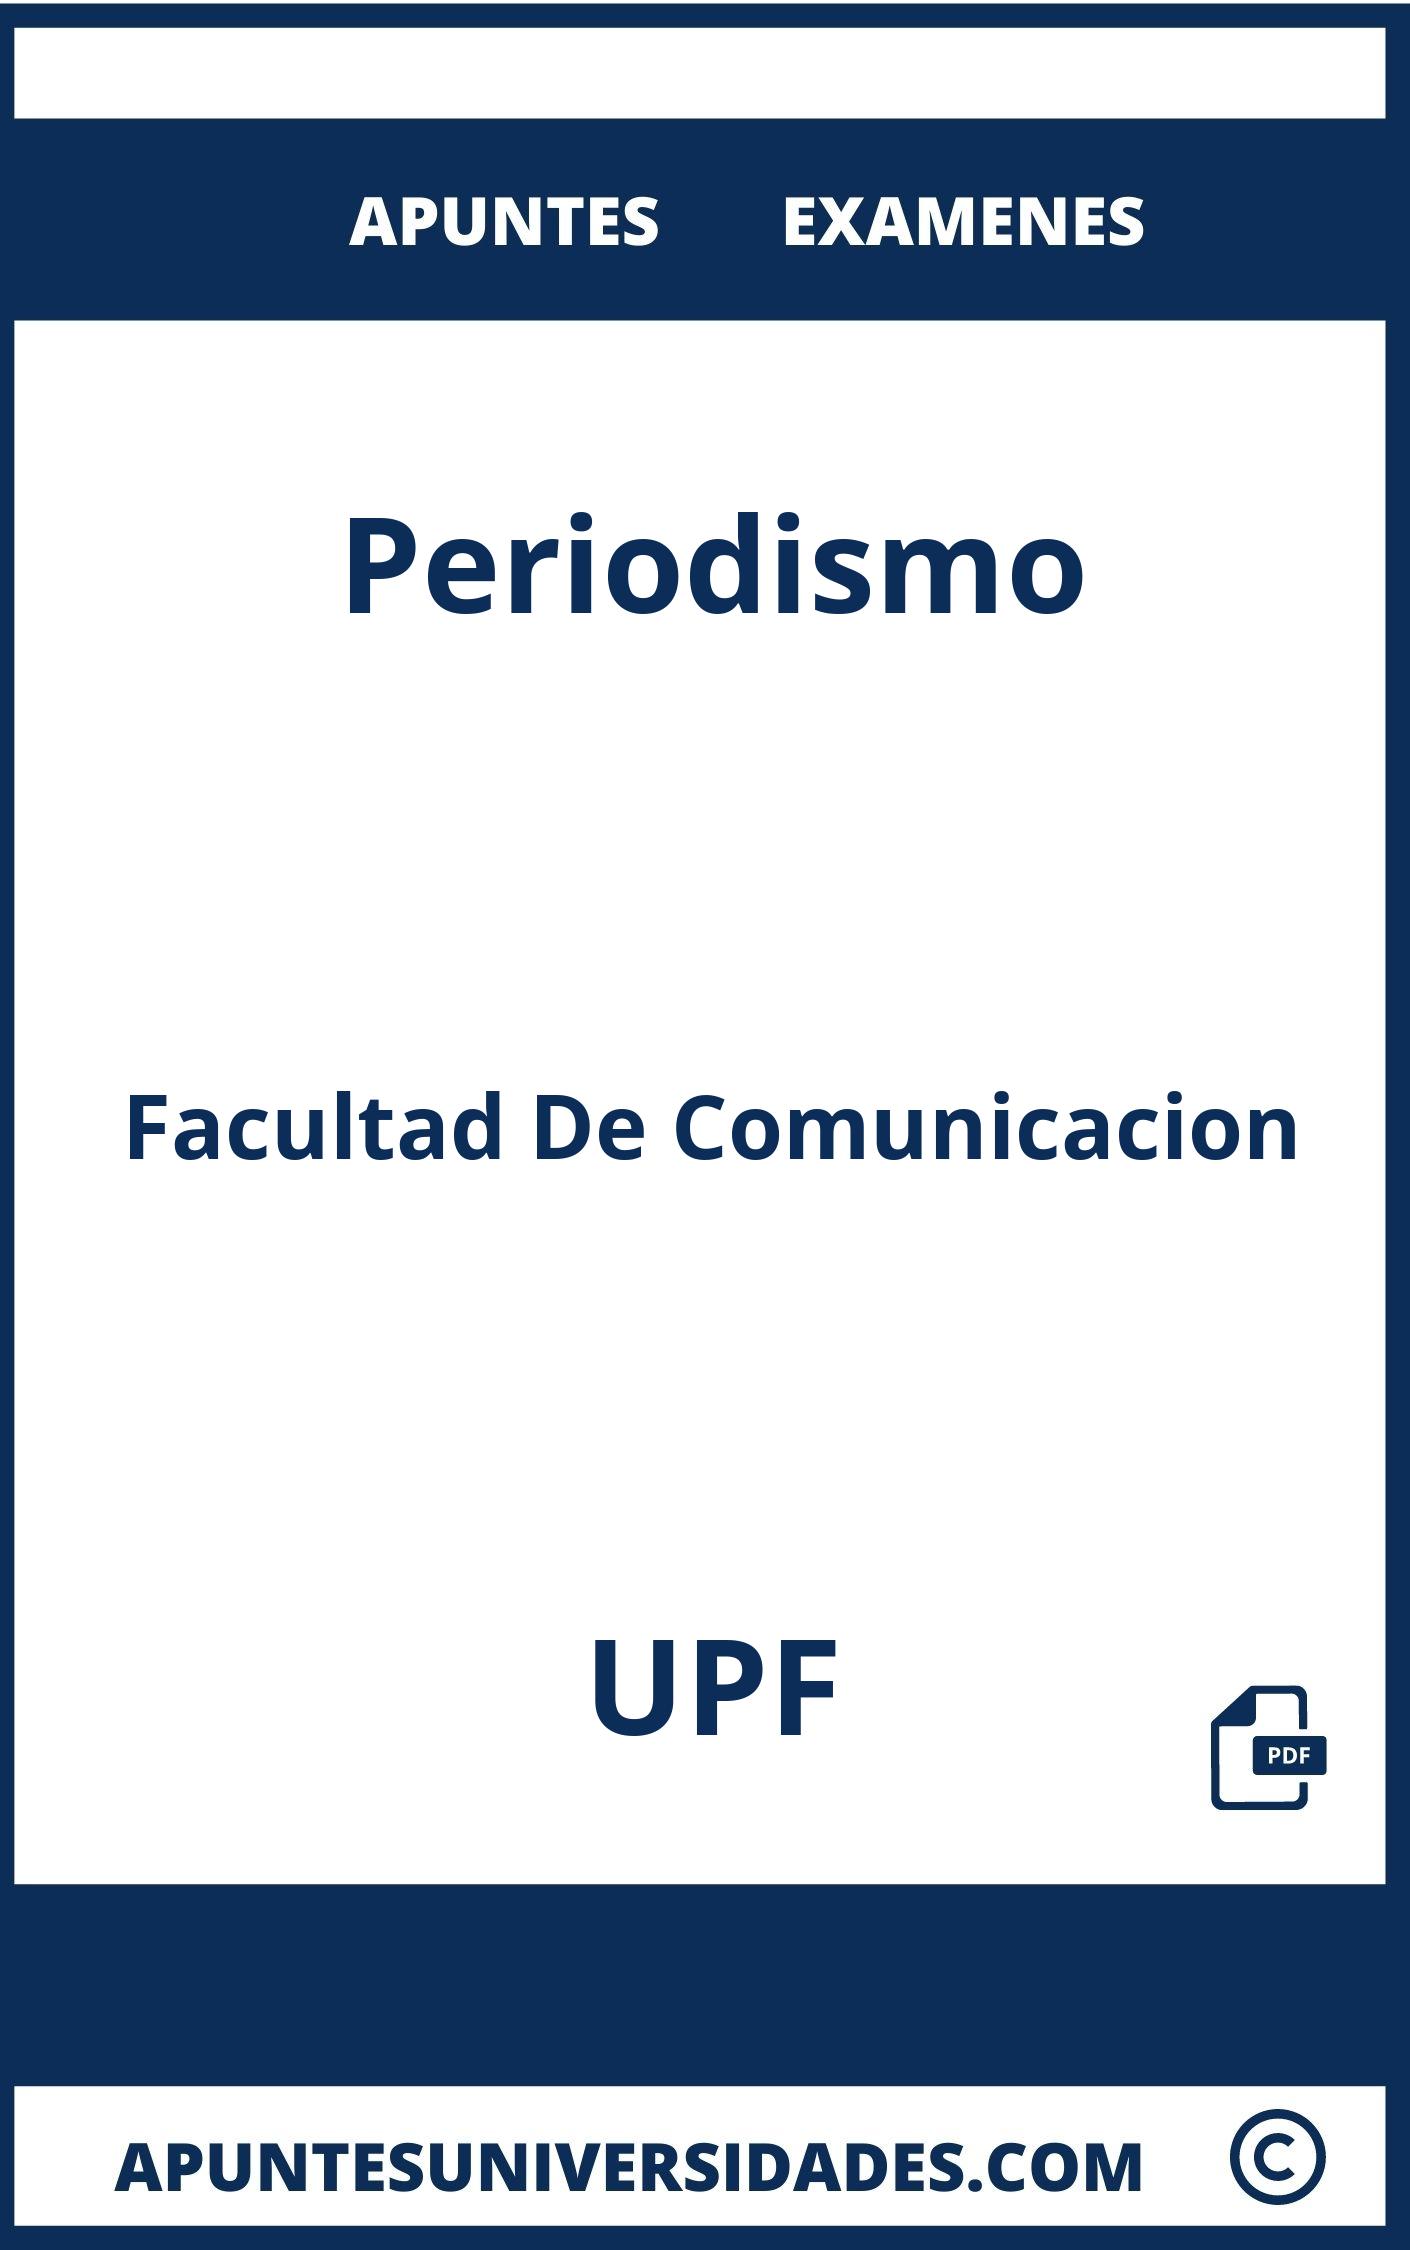 Examenes y Apuntes de Periodismo UPF